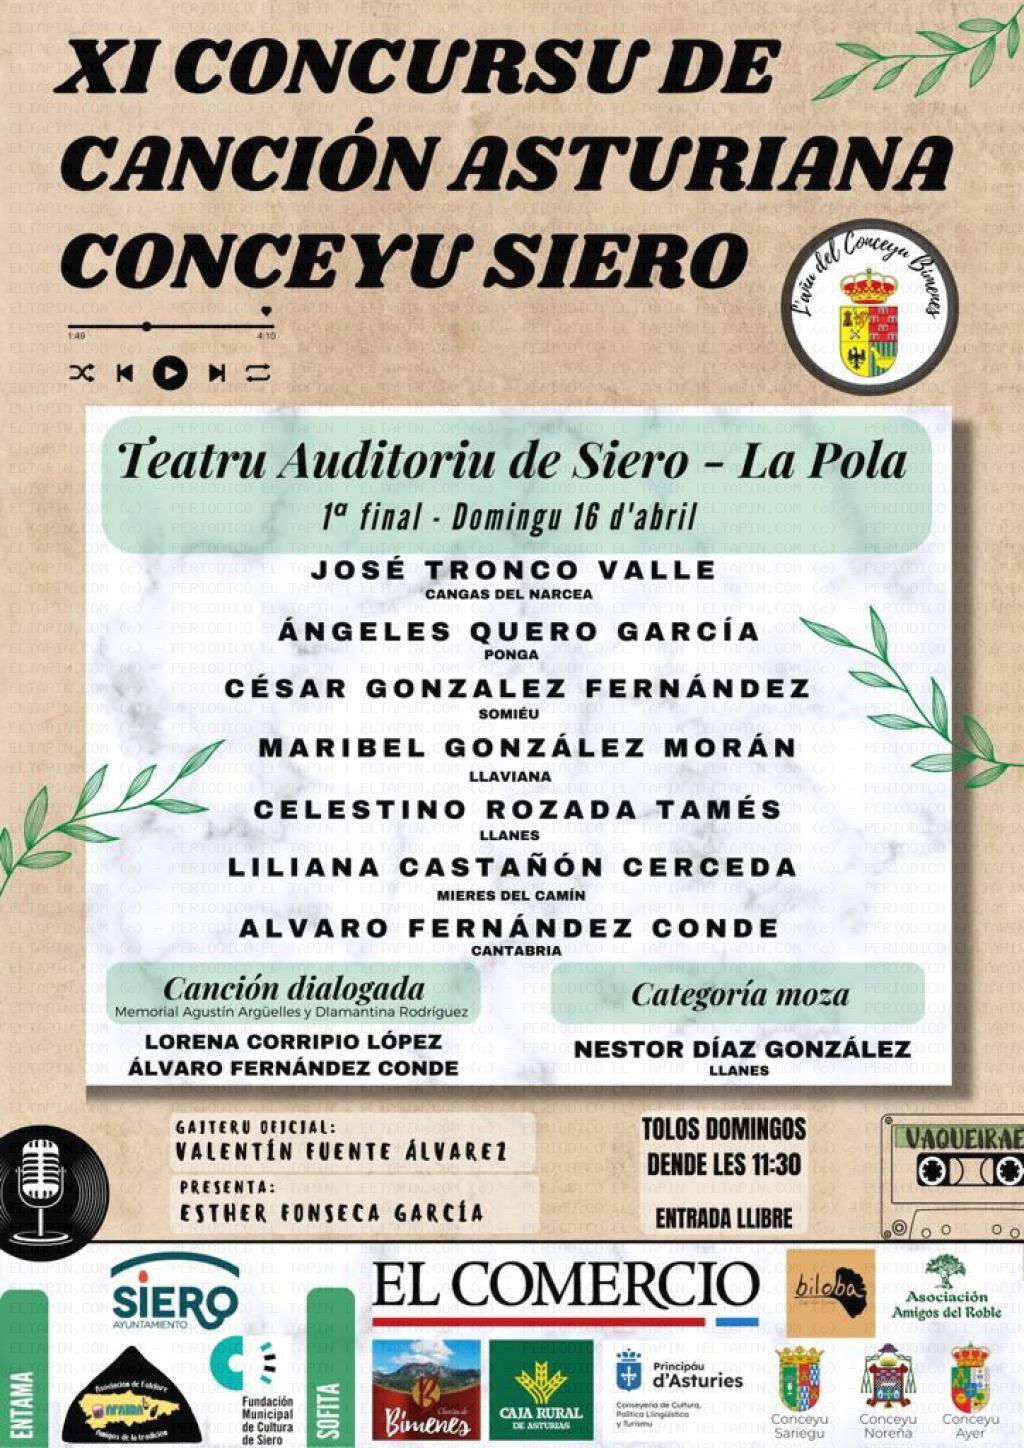 El Tapin - El XI Concurso de Canción Asturiana Conceyu de Siero ya tiene finalistas